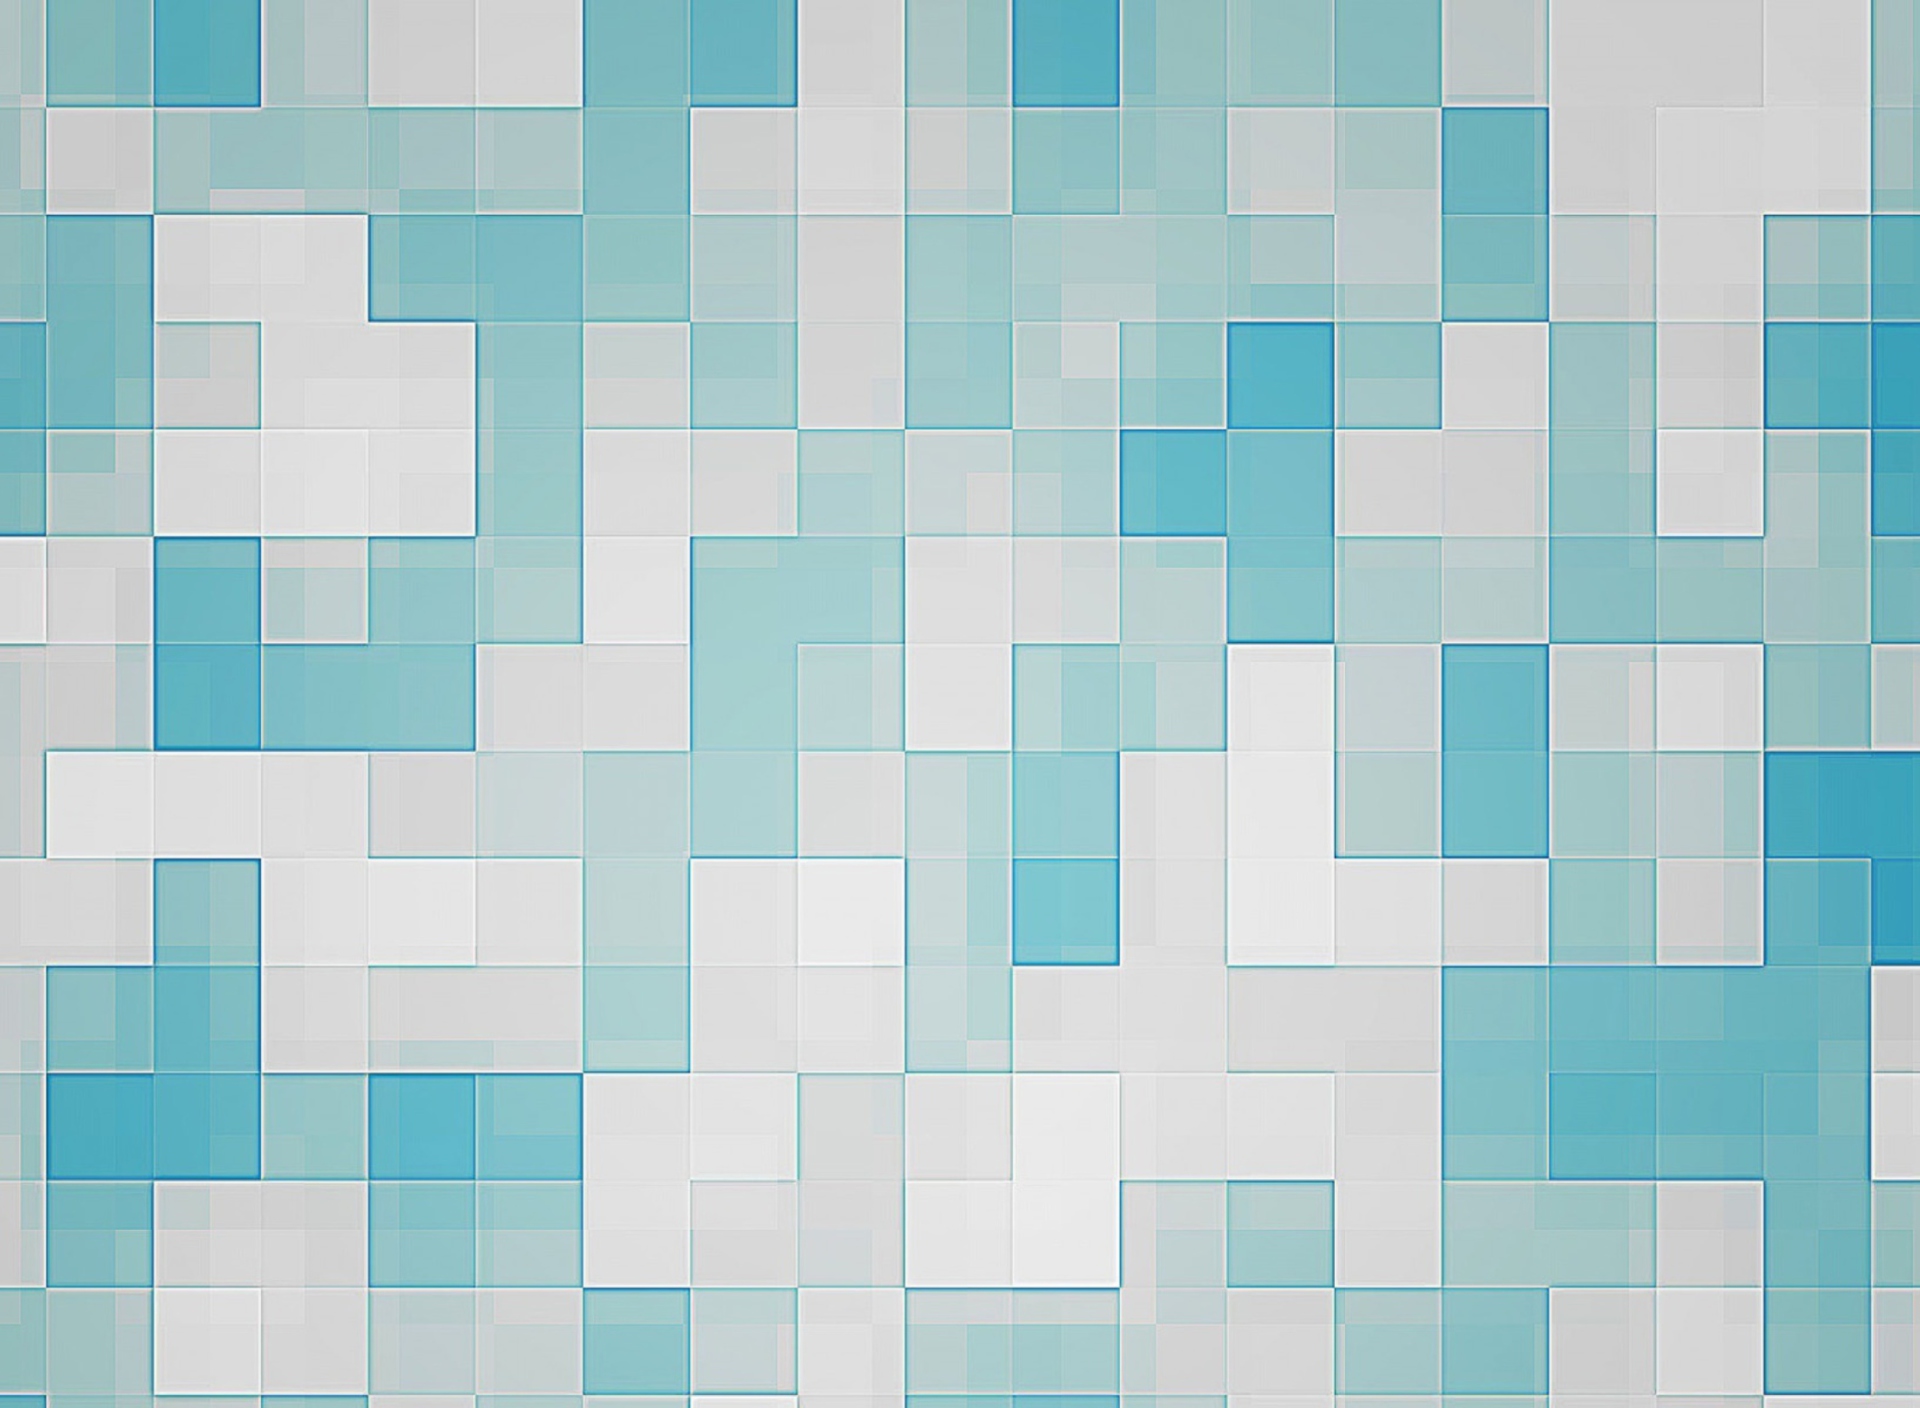 Das Mosaic Wallpaper 1920x1408